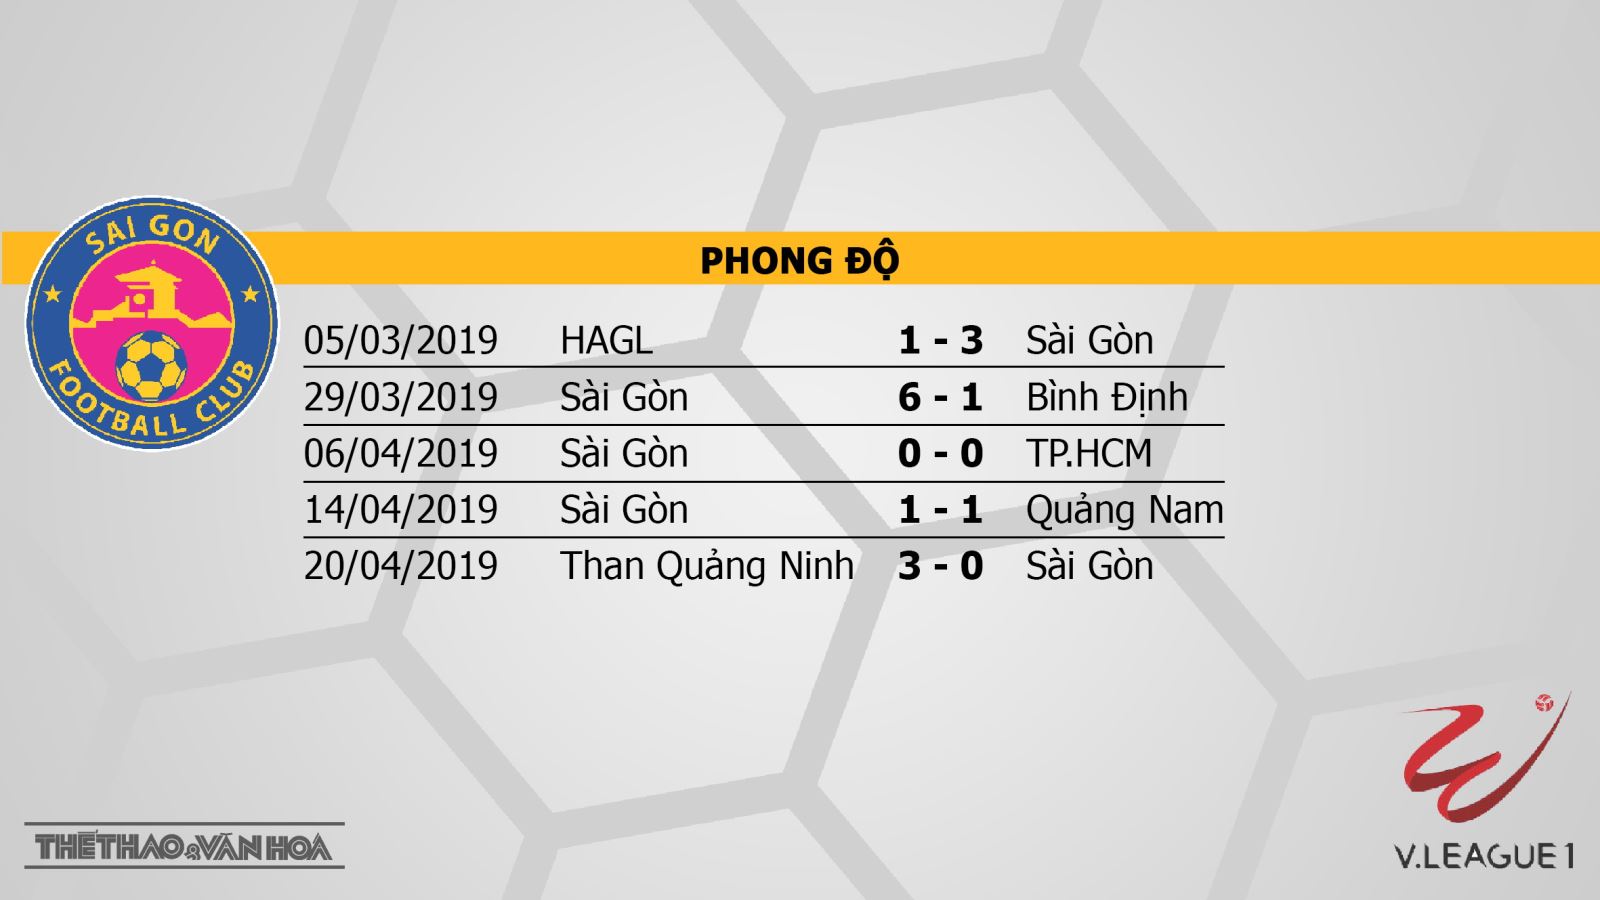 Sài Gòn vs SHB Đà Nẵng, trực tiếp bóng đá, nhận định bóng đá Sài Gòn vs SHB Đà Nẵng, nhận định Sài Gòn vs SHB Đà Nẵng, V-League 2019, BĐTV, VTV6, FPT Play